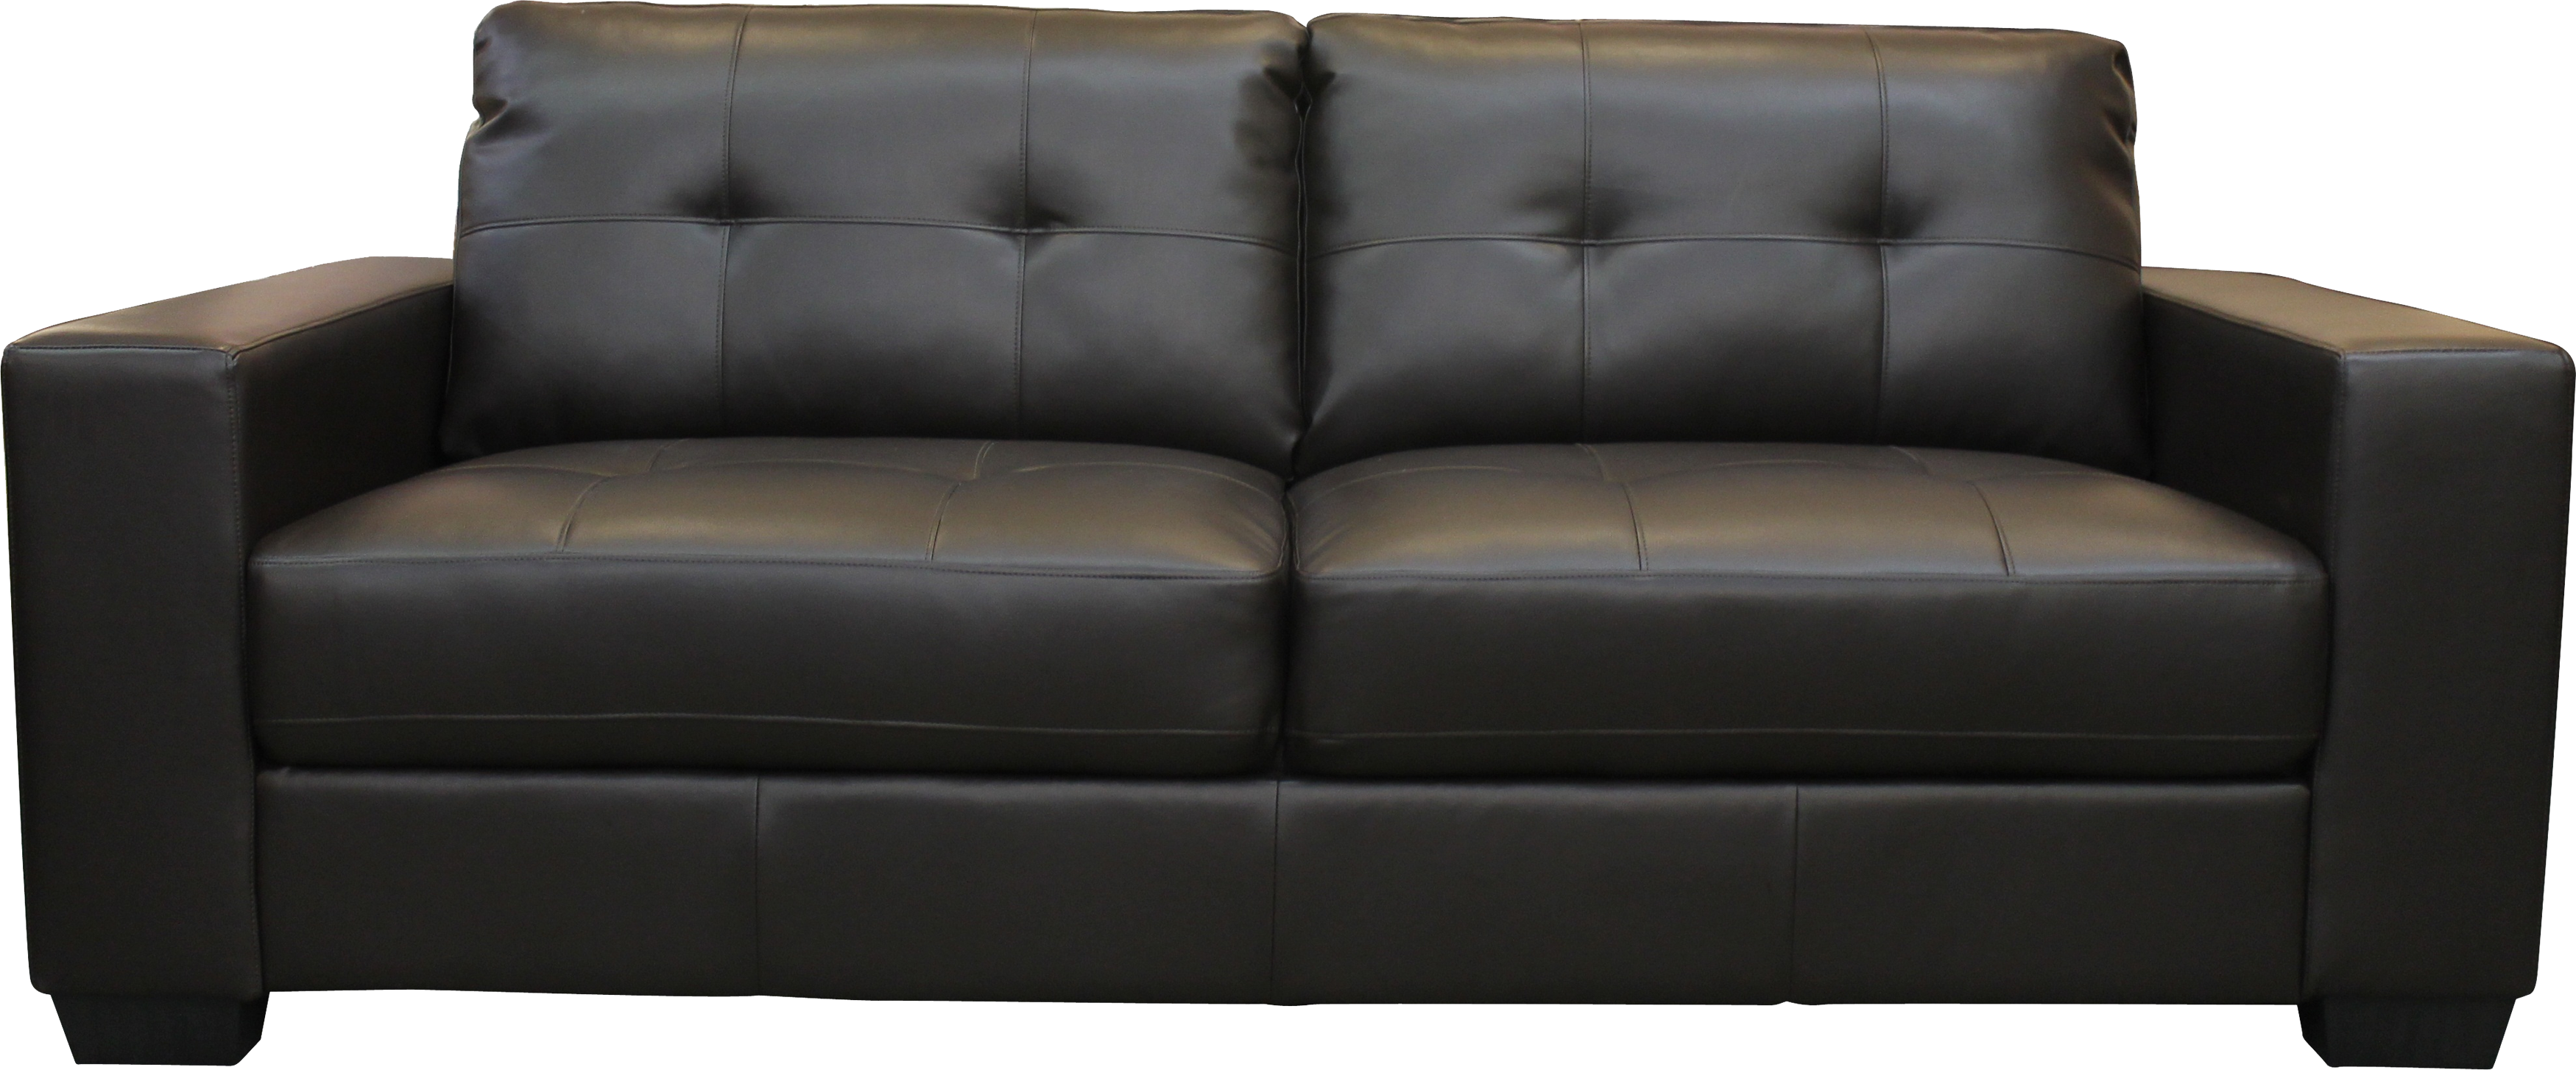 Sofa PNG Clipart